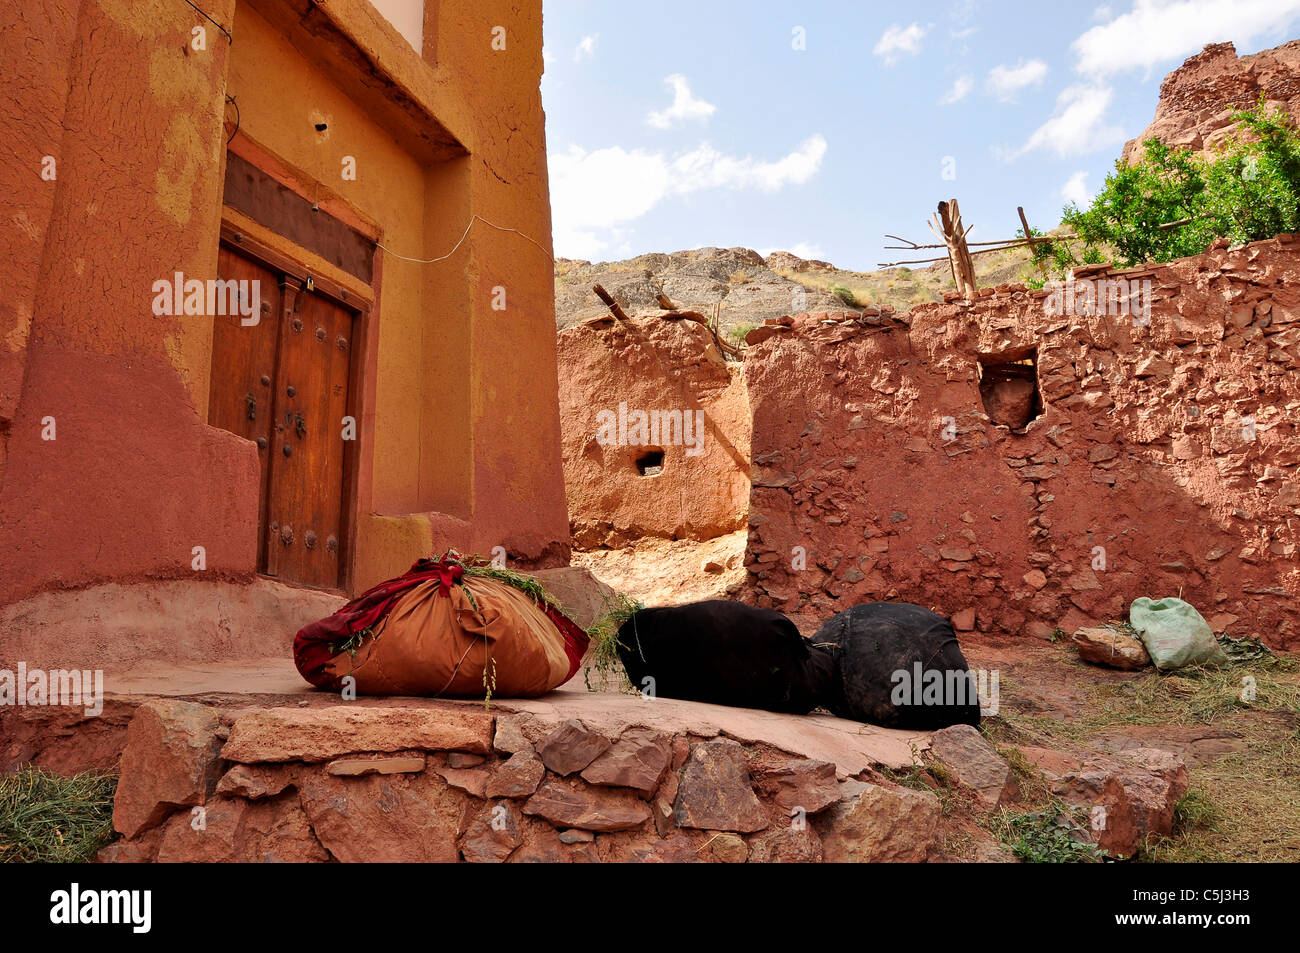 Fasci di cannucce e erba medica per alimentare gli animali nella parte anteriore di una vecchia casa in villaggio Abyaneh, Isfahan Iran. Foto Stock